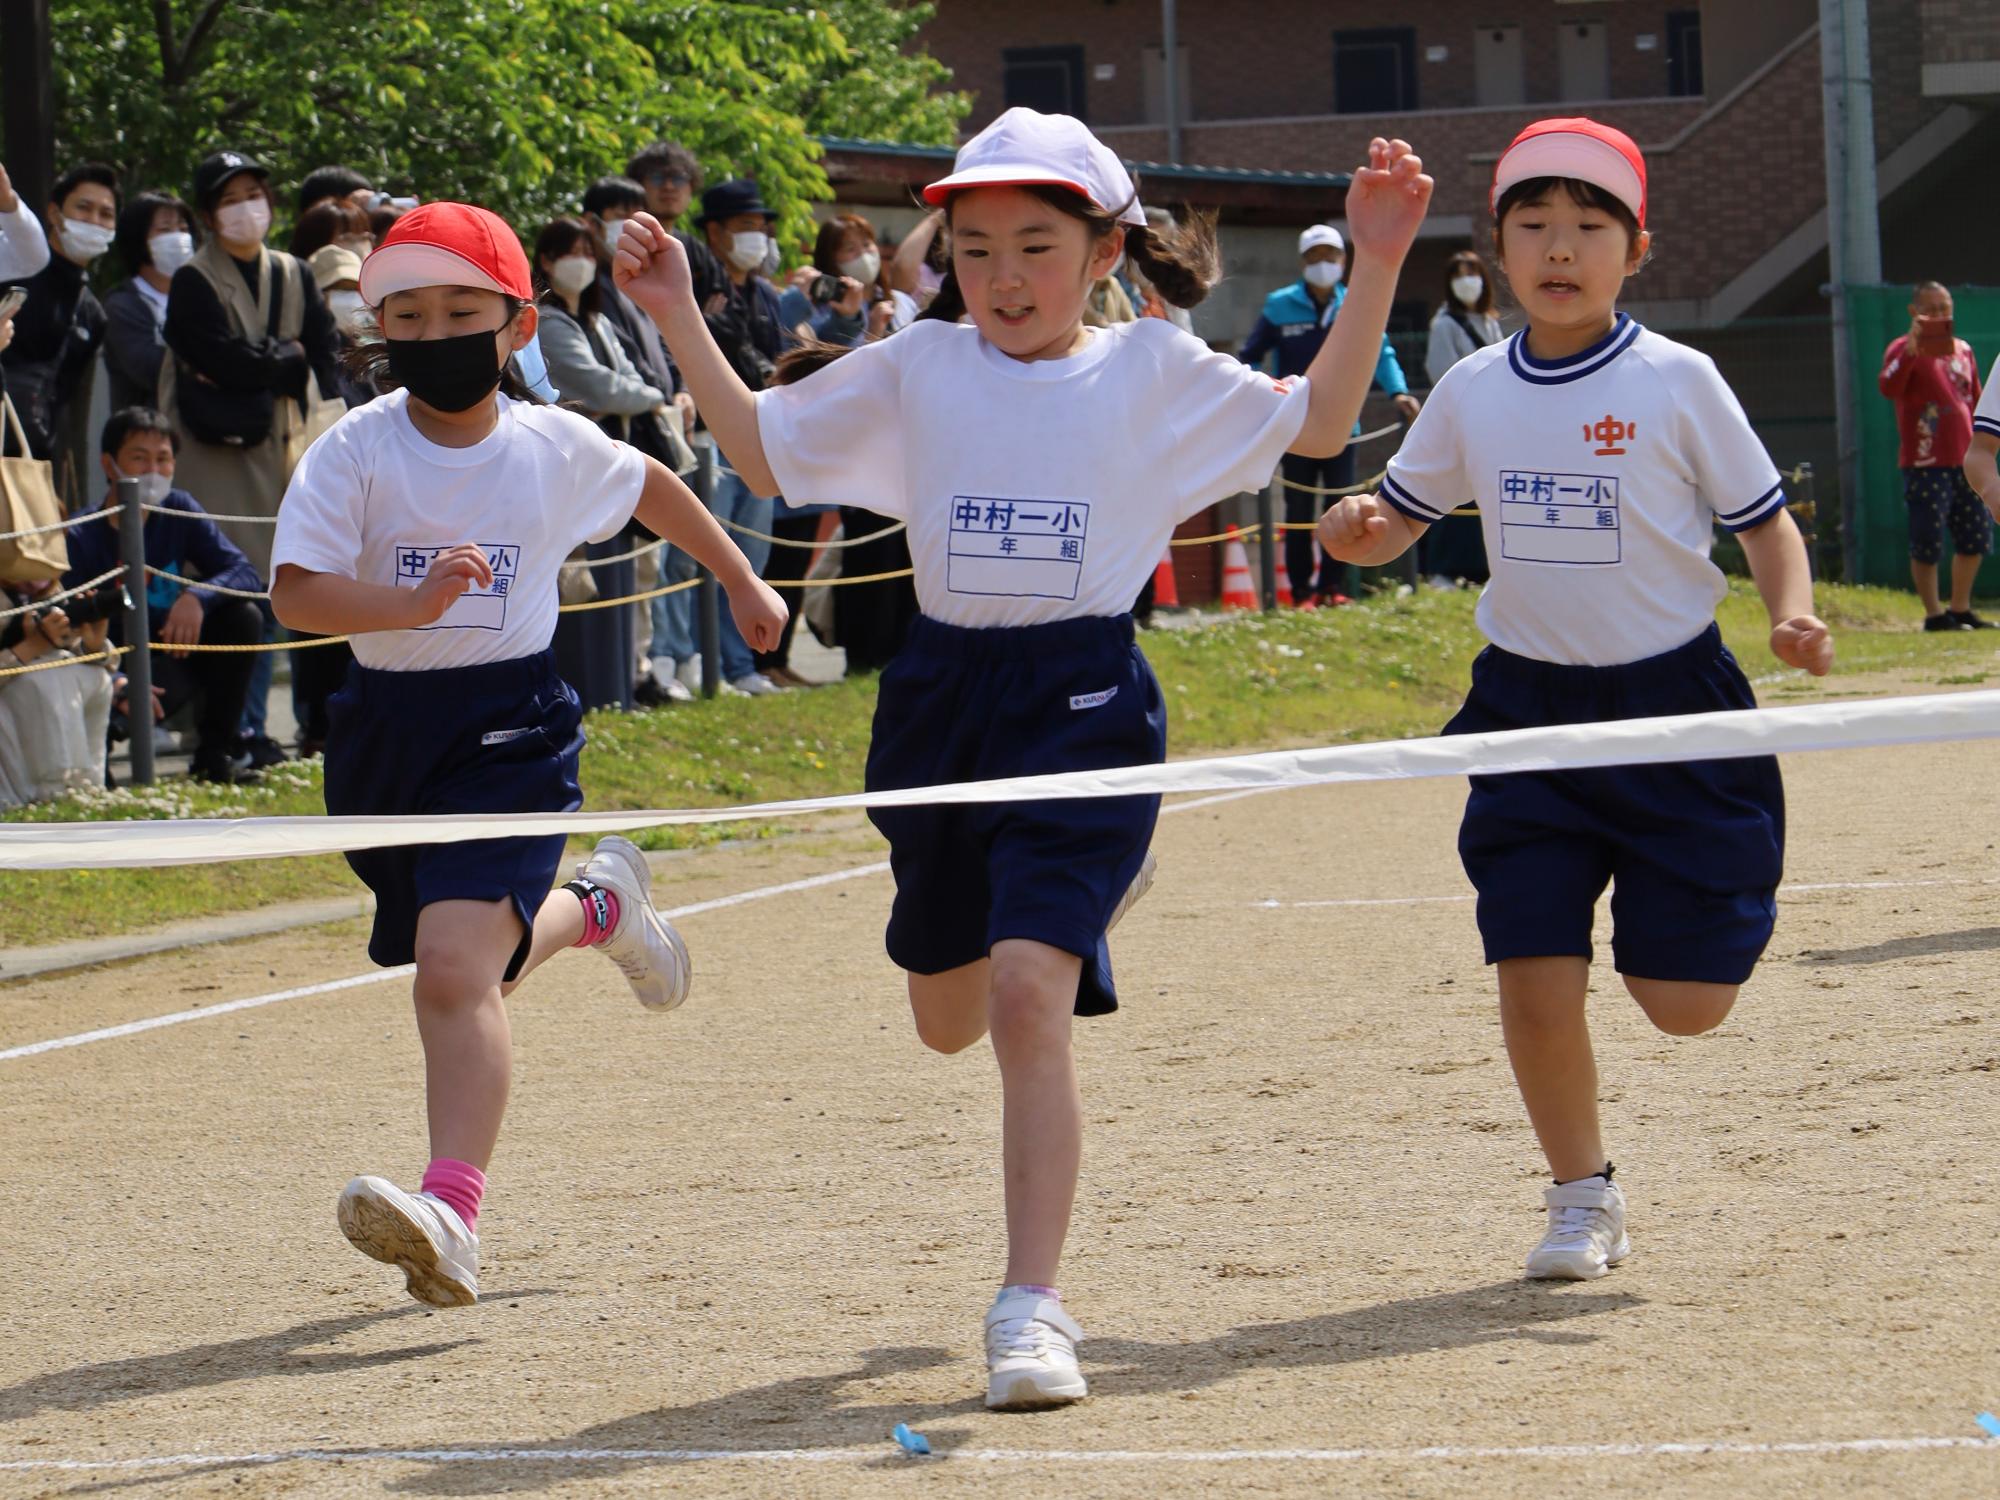 中村第一小学校スポーツフェスティバルで徒競走に出場している児童の様子